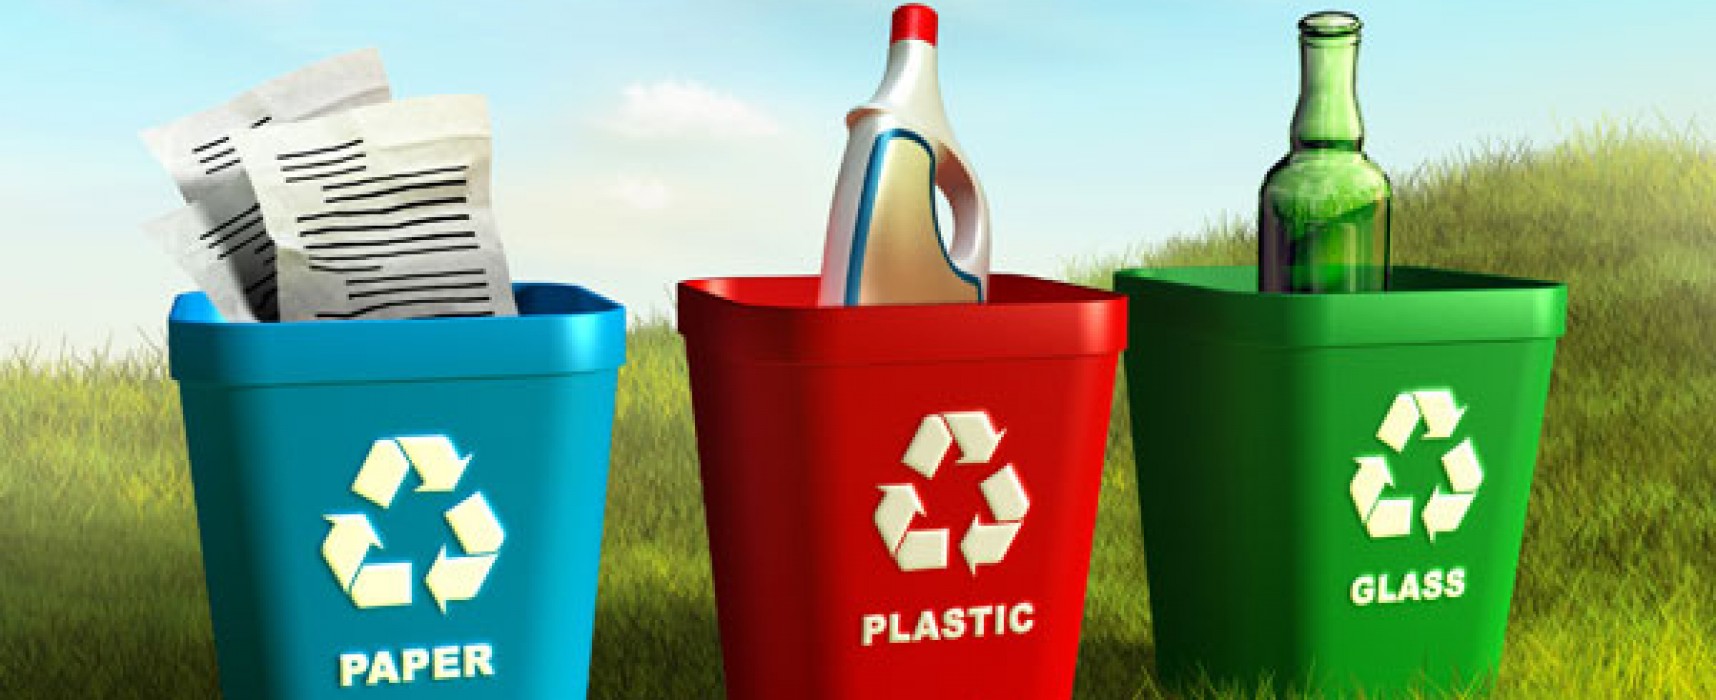 MARE y Gobierno de Cantabria ponen en marca la campaña ‘Reciclar es ahorrar’